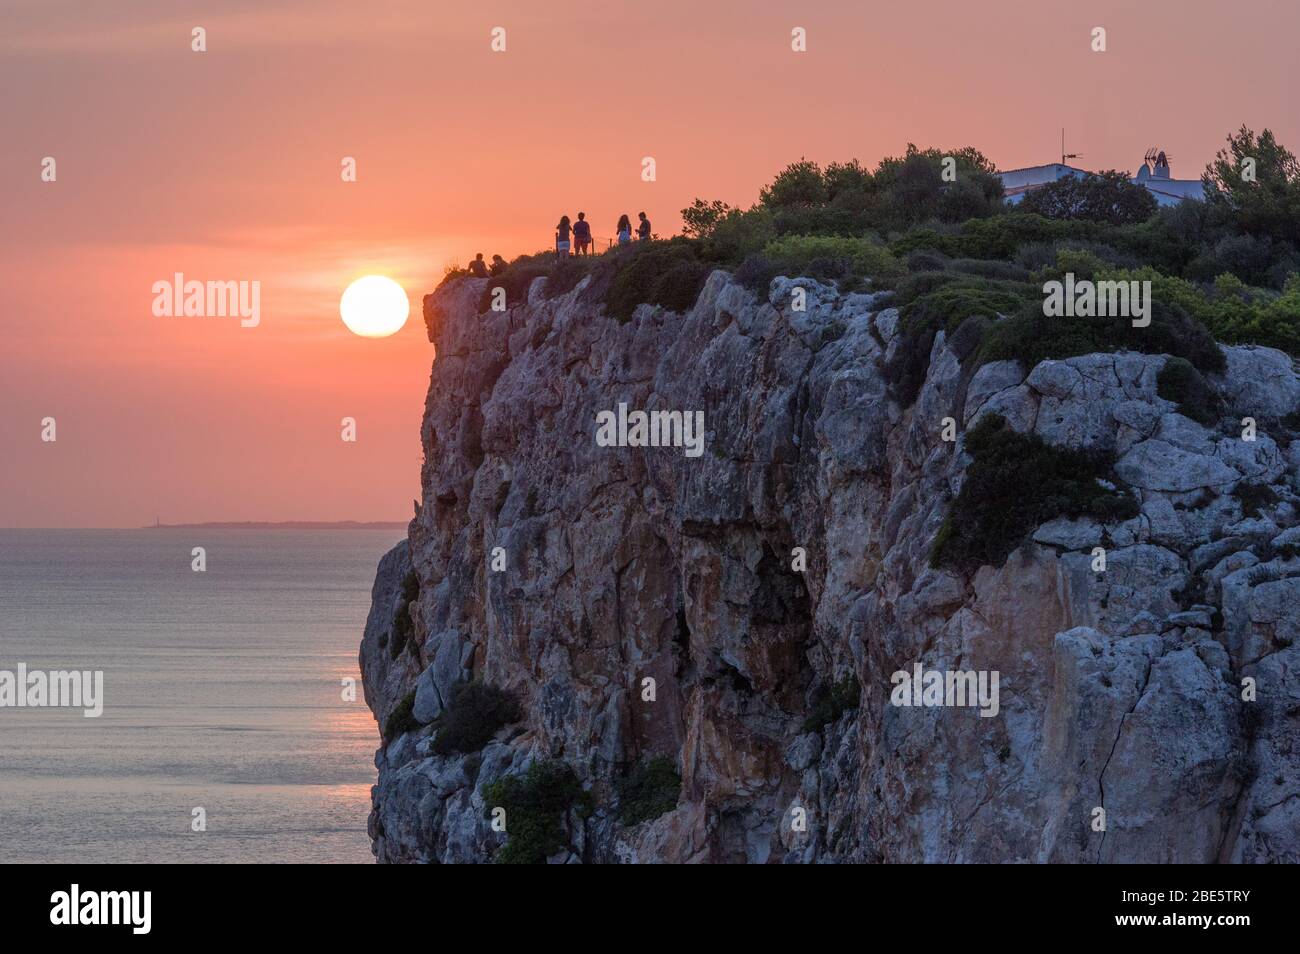 Beautiful vivid orange summer sunset over mountain top cliffs Stock Photo